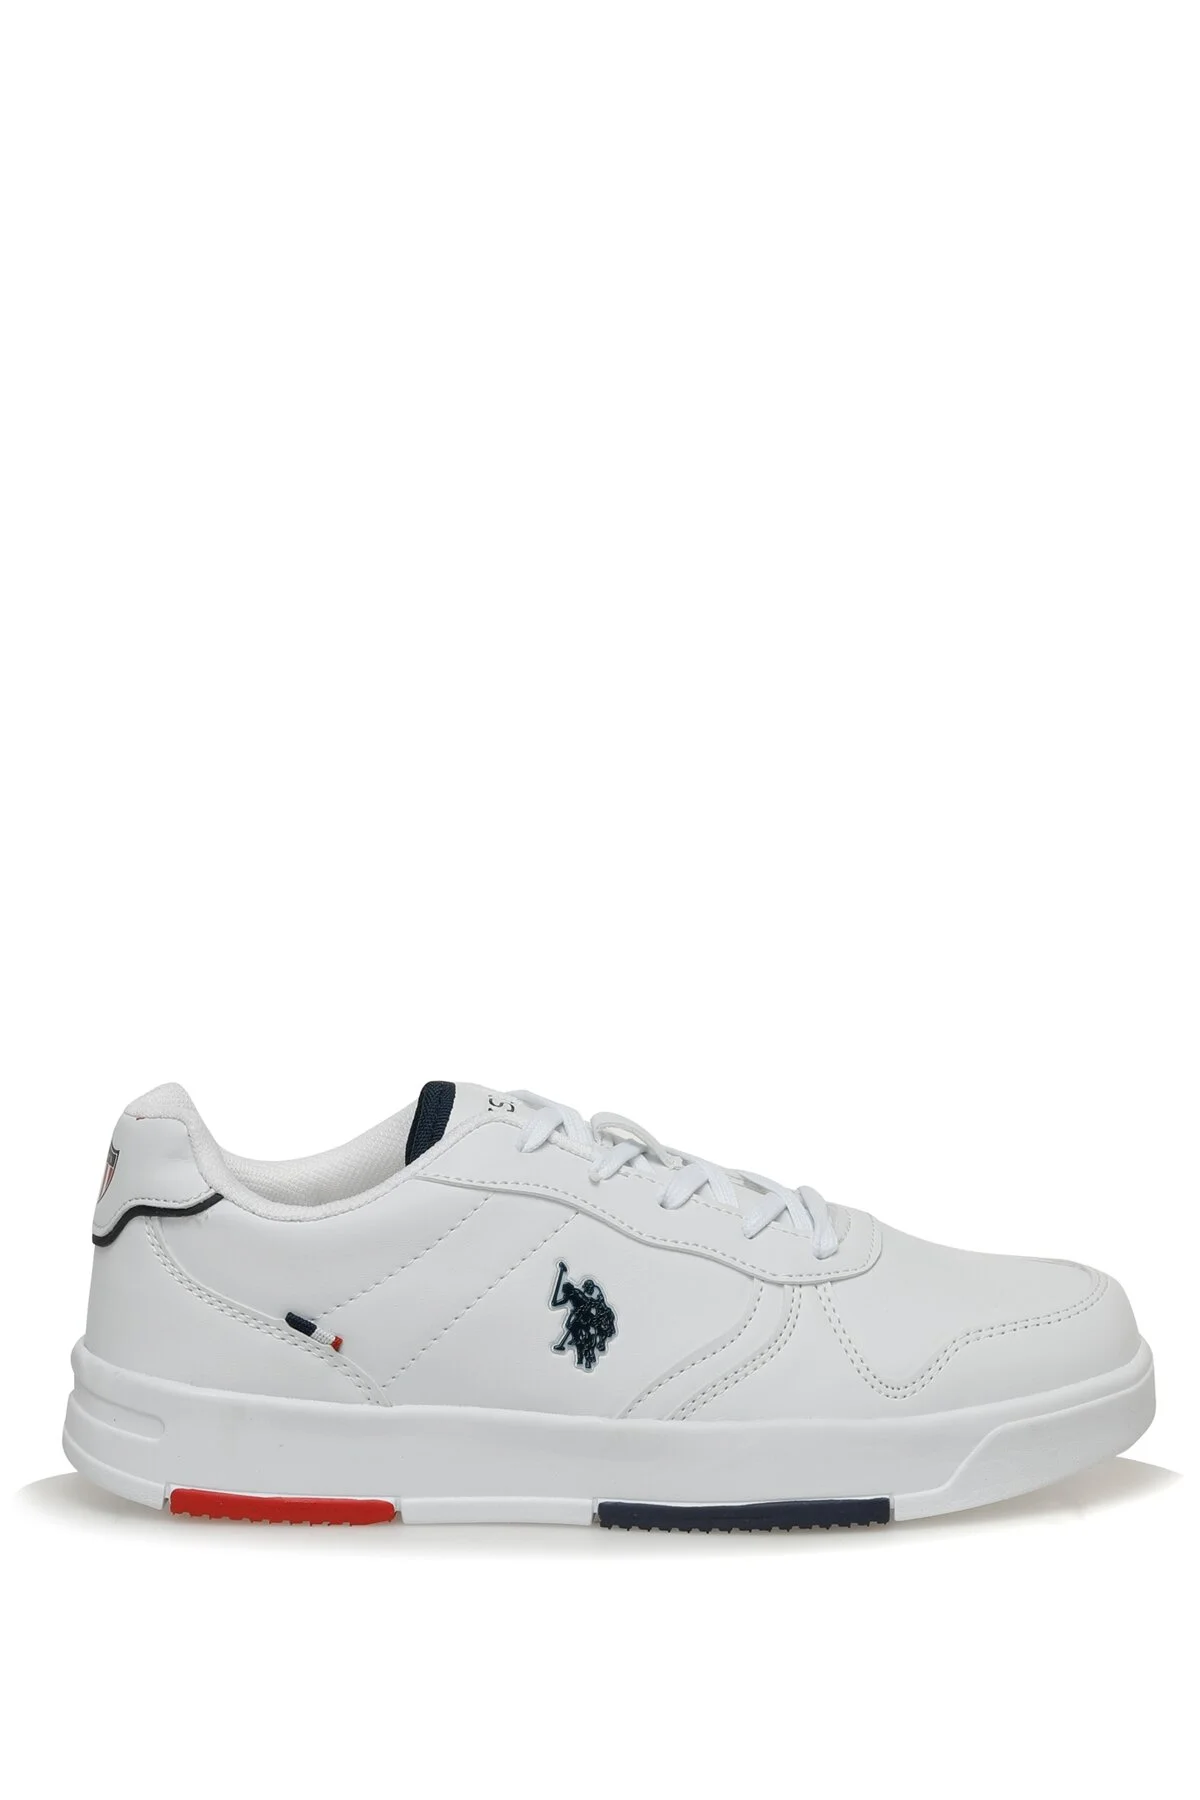 U.S. Polo Assn - ANDREI 3FX Erkek Sneaker-Beyaz